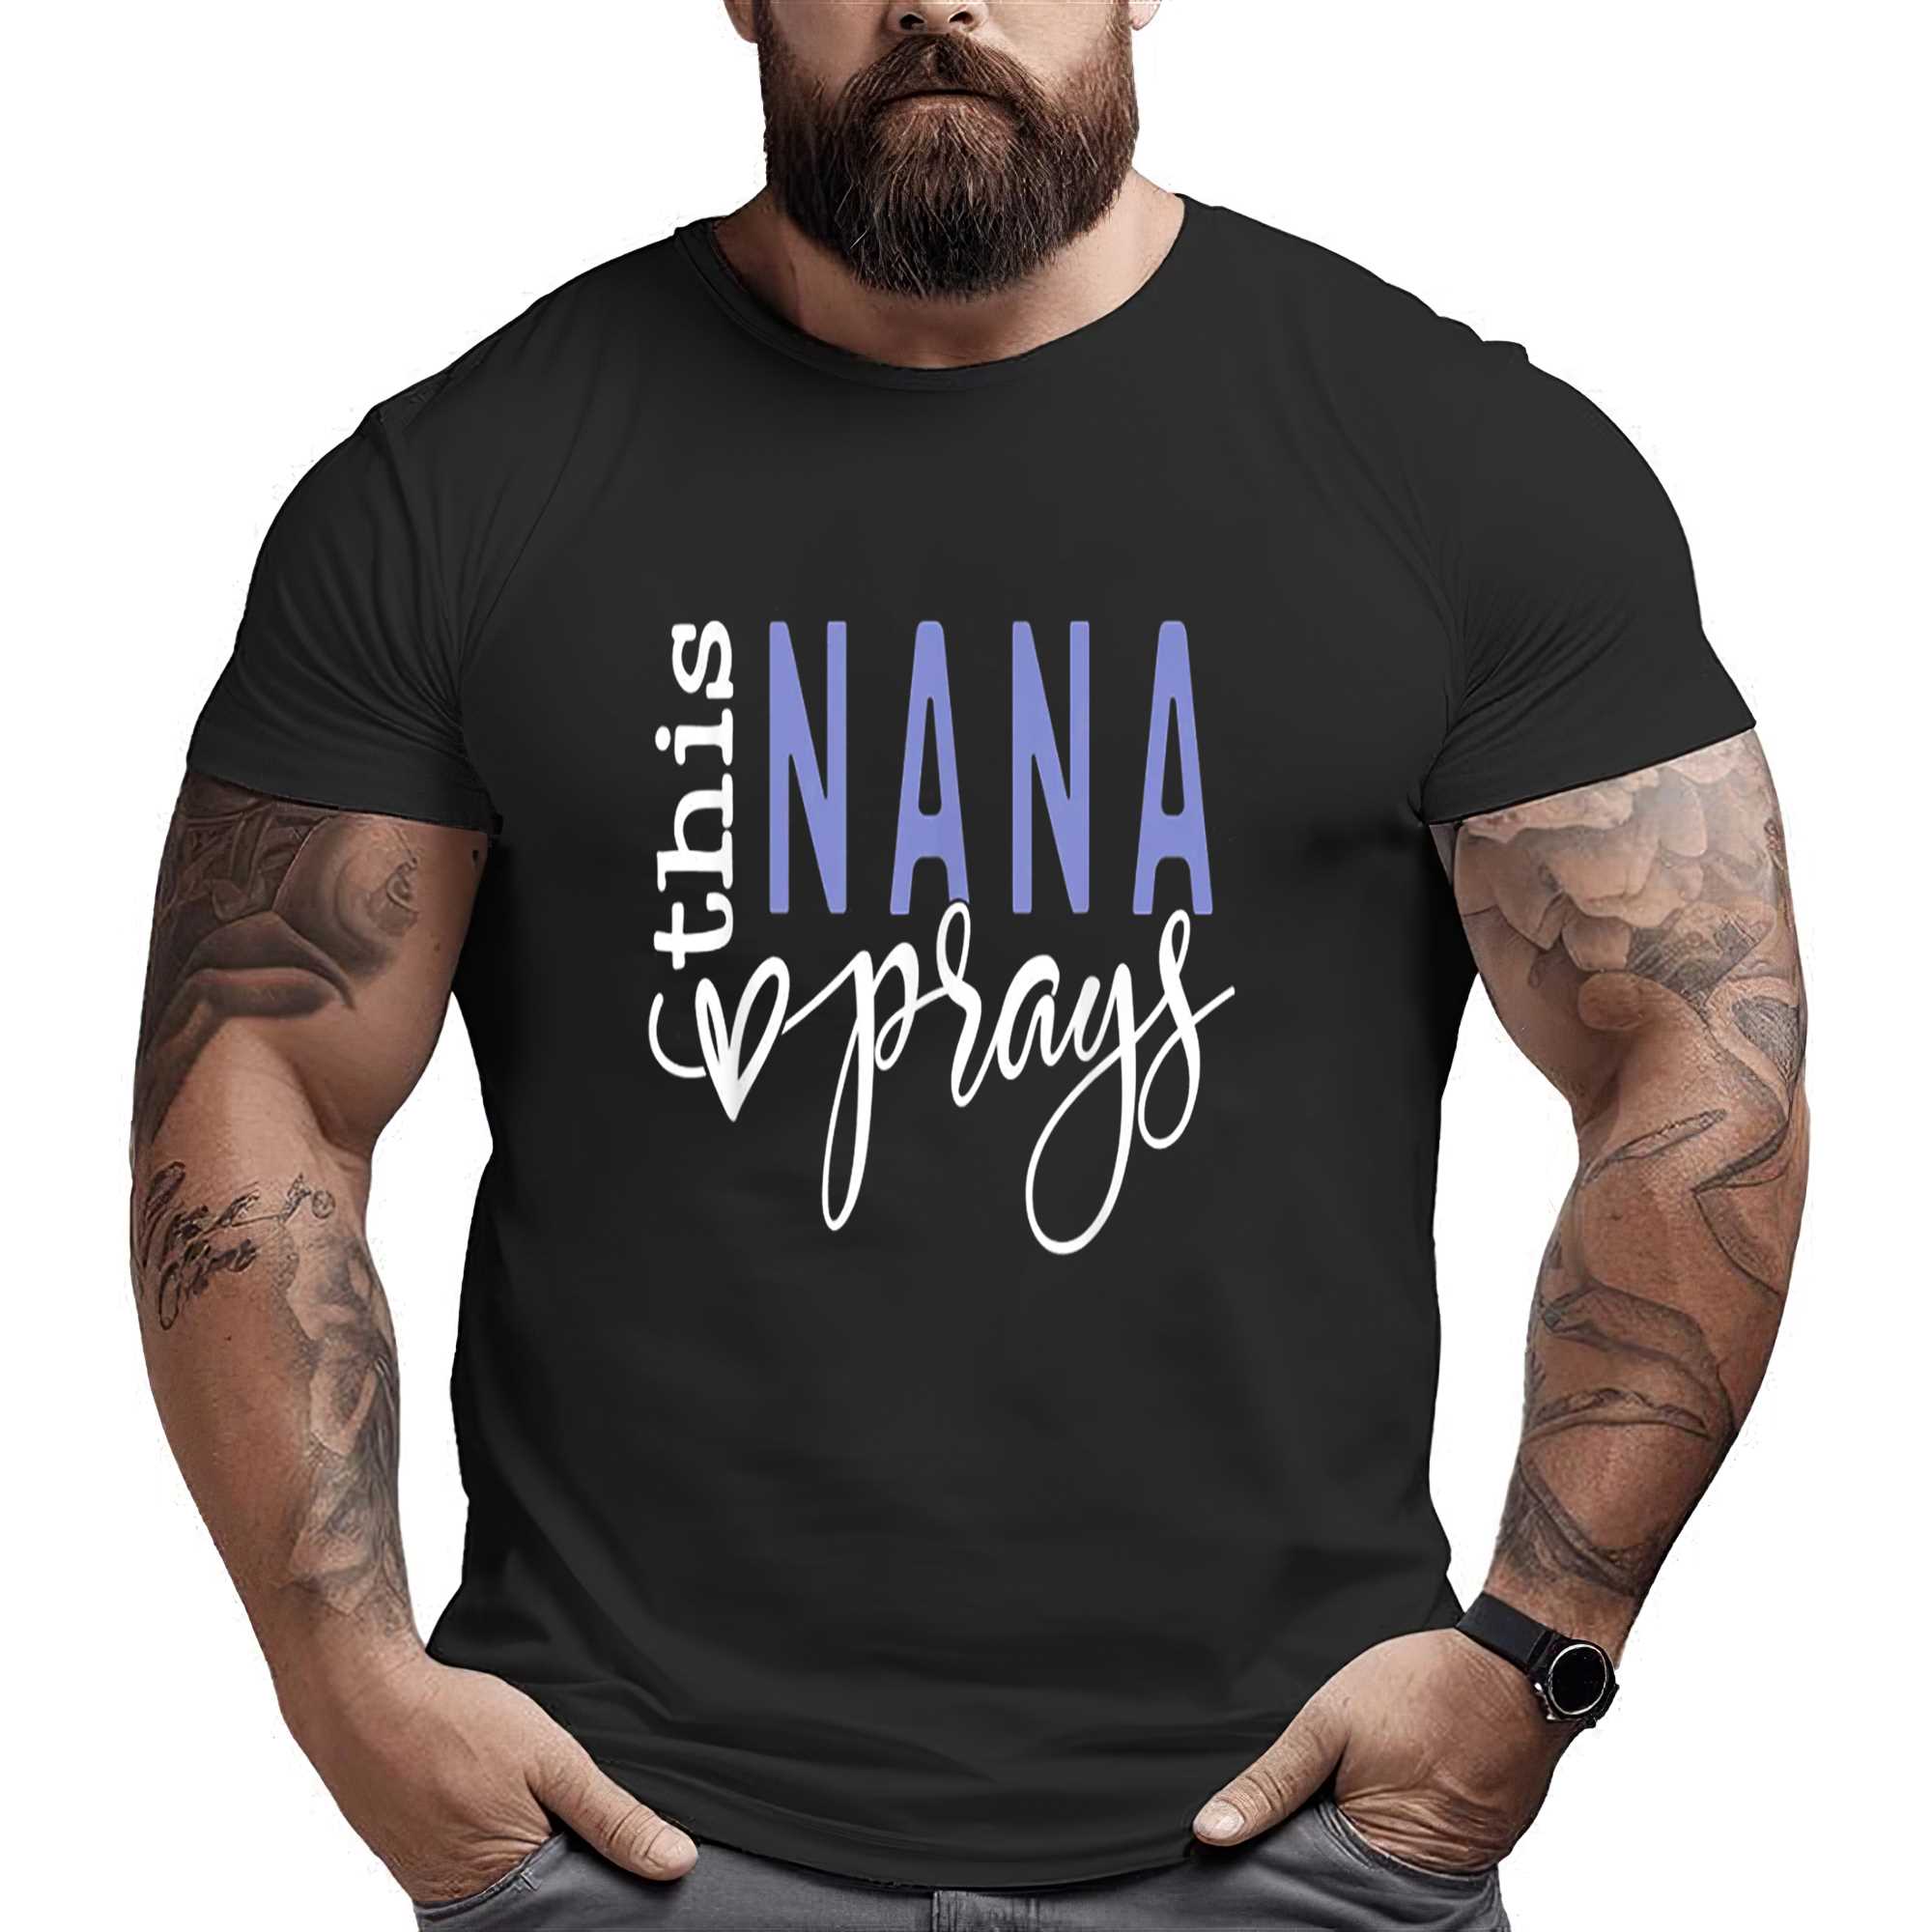 This Nana Love Prays T-shirt